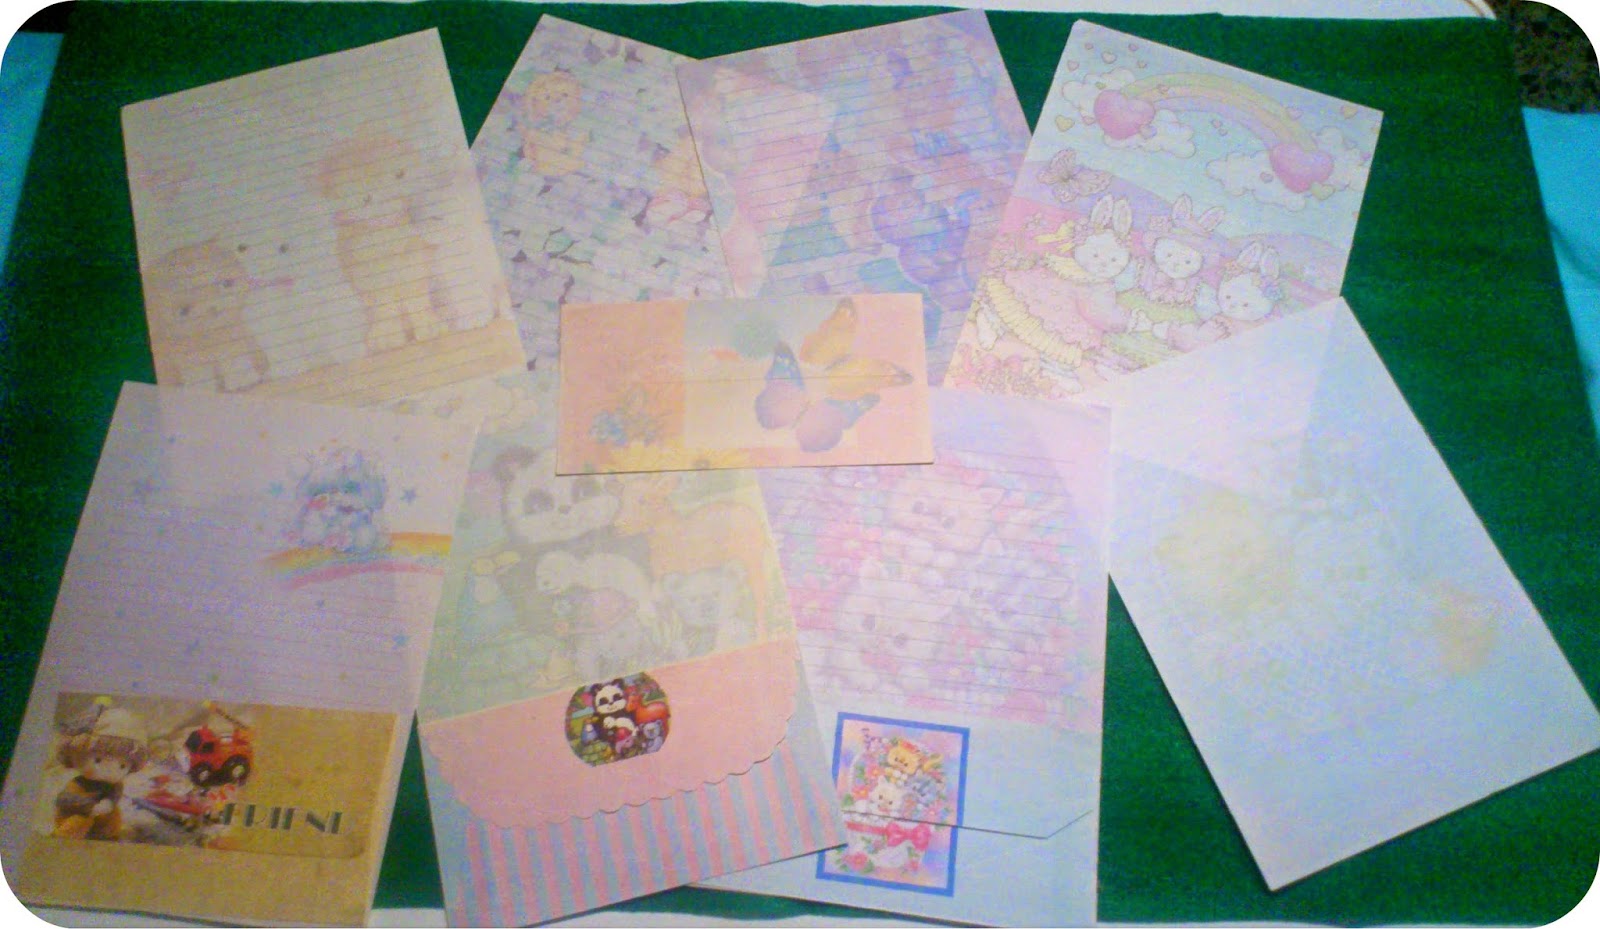 Algunas de mis cartas perfumadas ❤️ #cartasperfumadas #infancia #segun